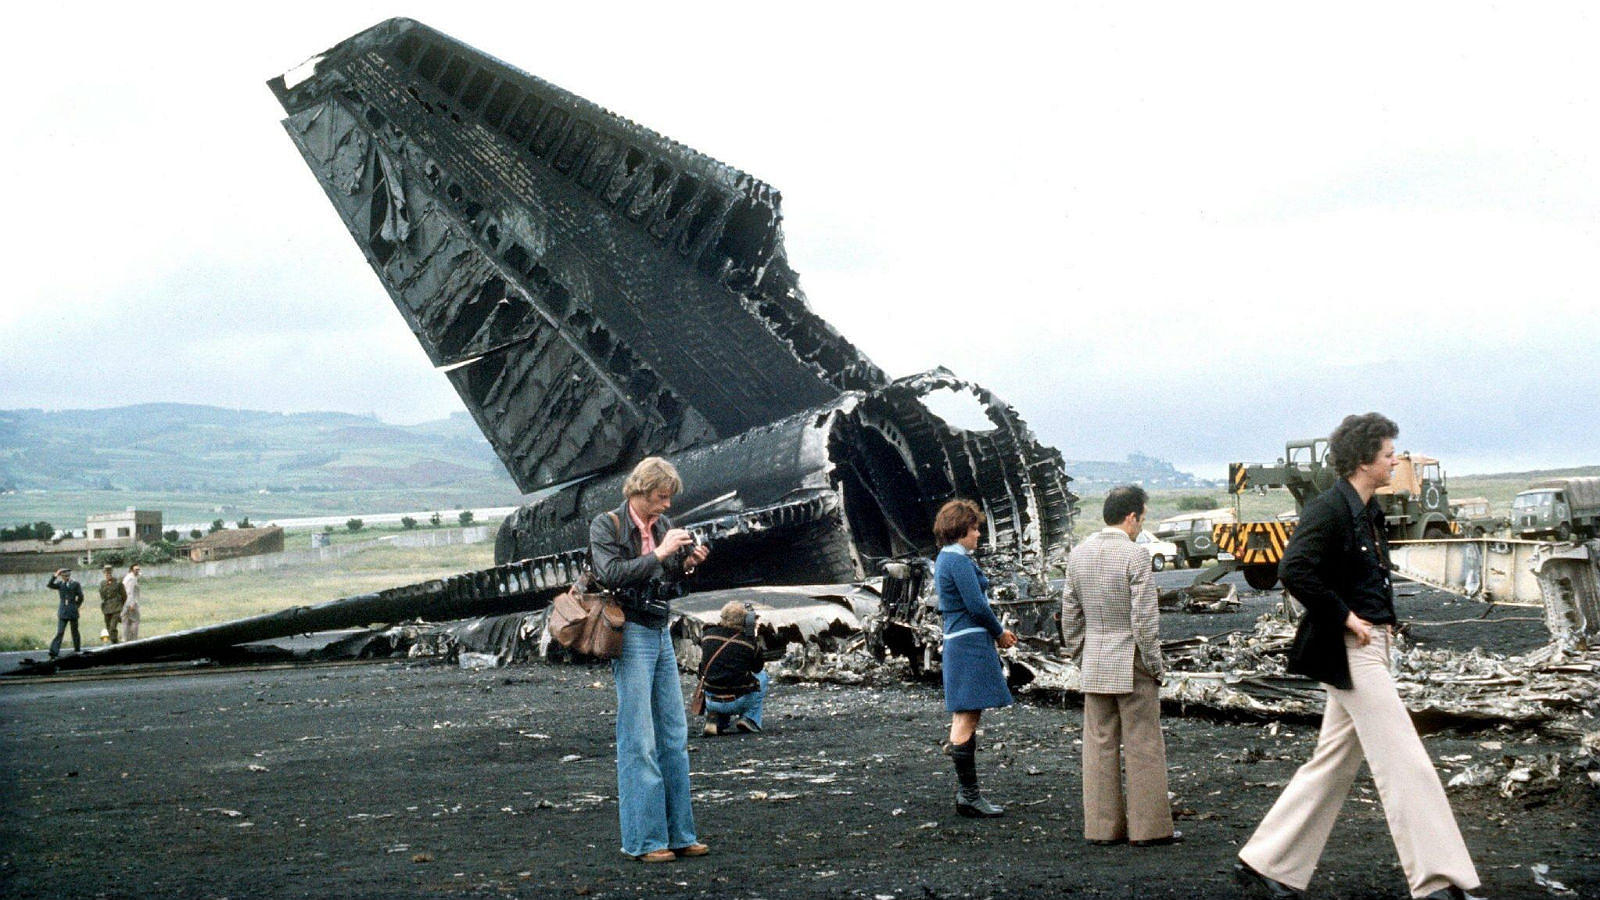 Para hacernos un idea de la magnitud de la tragedia, el 12 de noviembre de 1996 se produjo la tercera mayor catástrofe aérea de la aviación comercial, al colisionar dos aviones en Nueva Delhi (India). Murieron los 349 pasajeros que iban a bordo, 234 menos que los producidos en Tenerife. La segunda se produjo en Japón en 1985, con 520 muertos